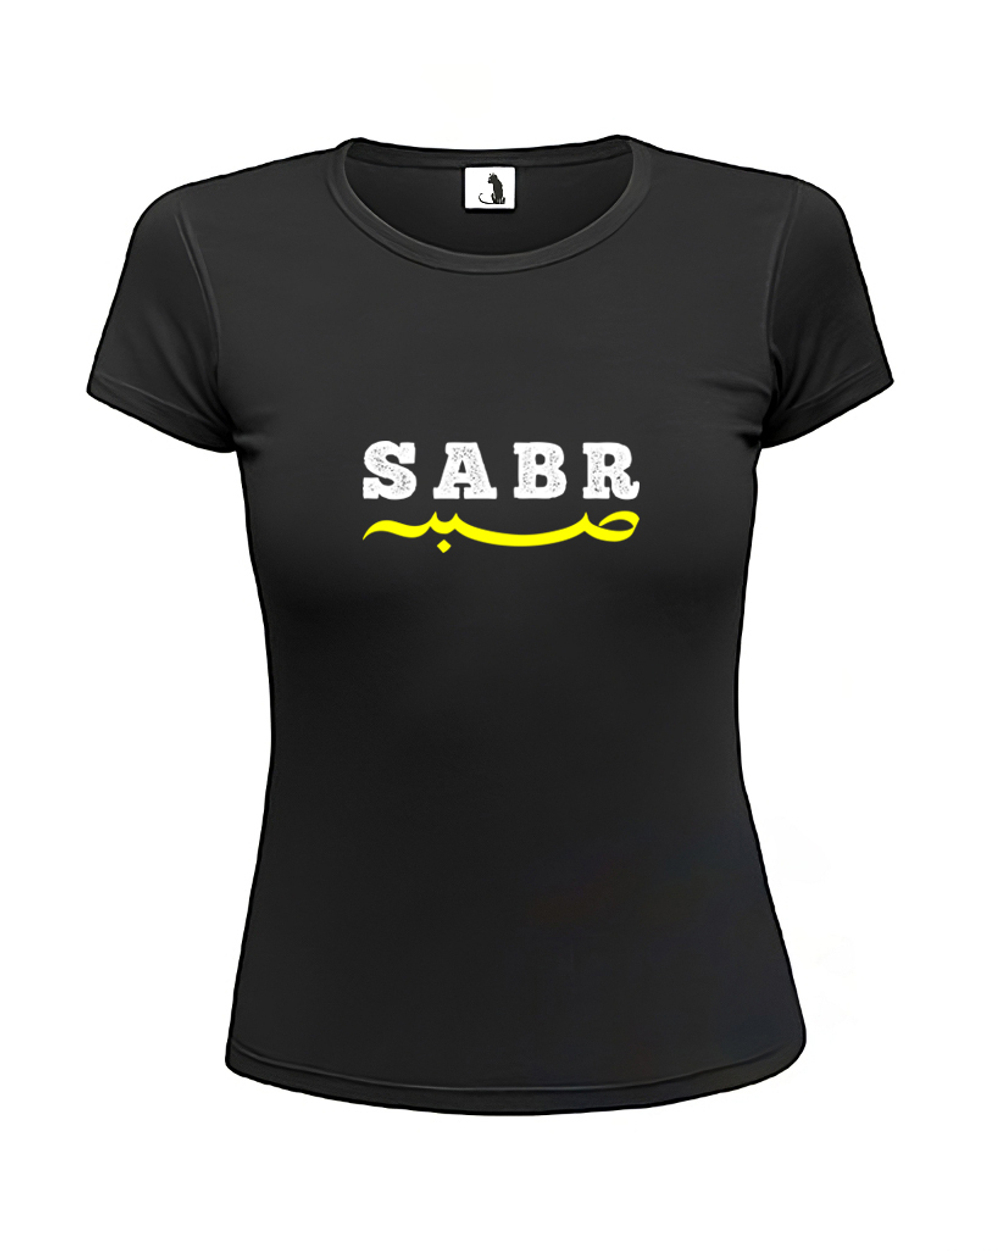 Футболка Sabr женская приталенная черная